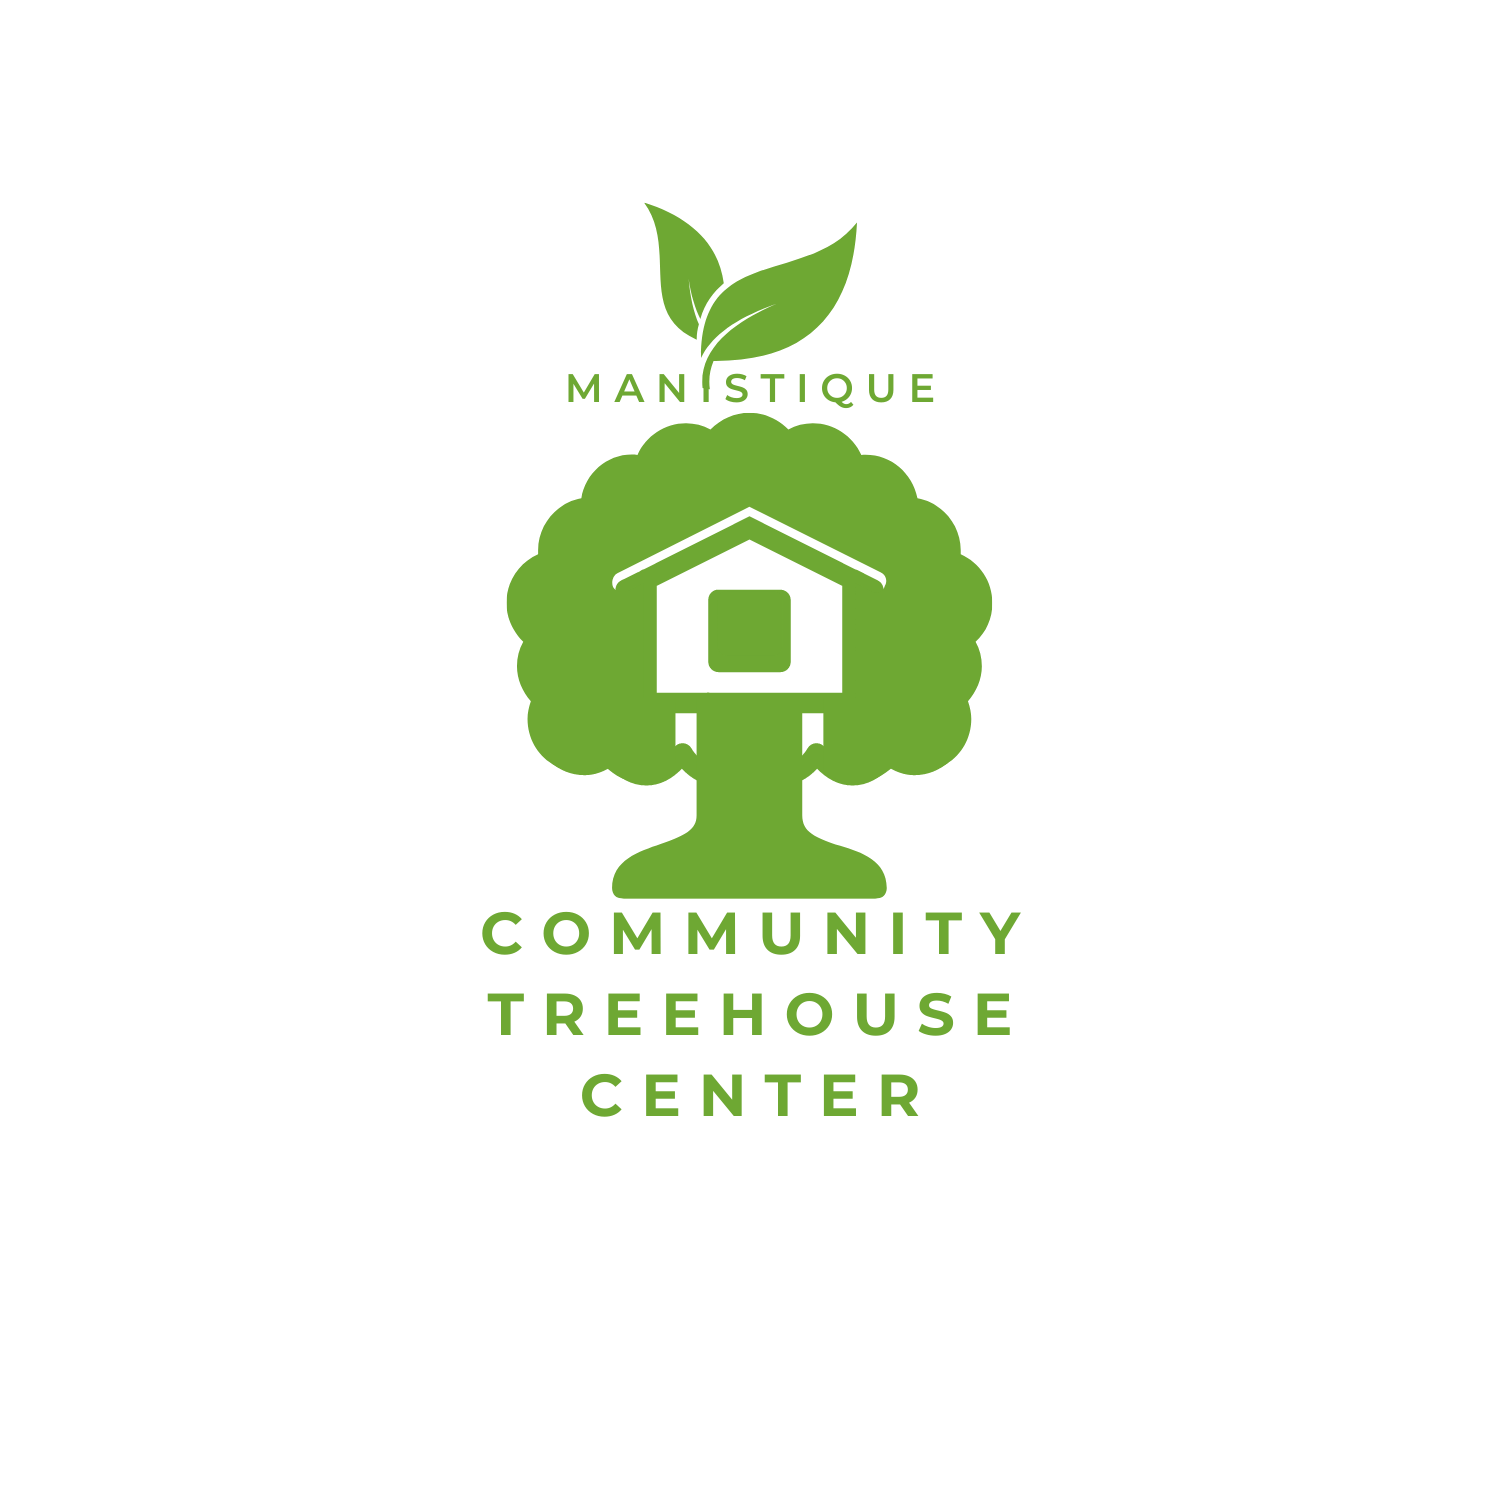 Community Treehouse Center Detroit logo